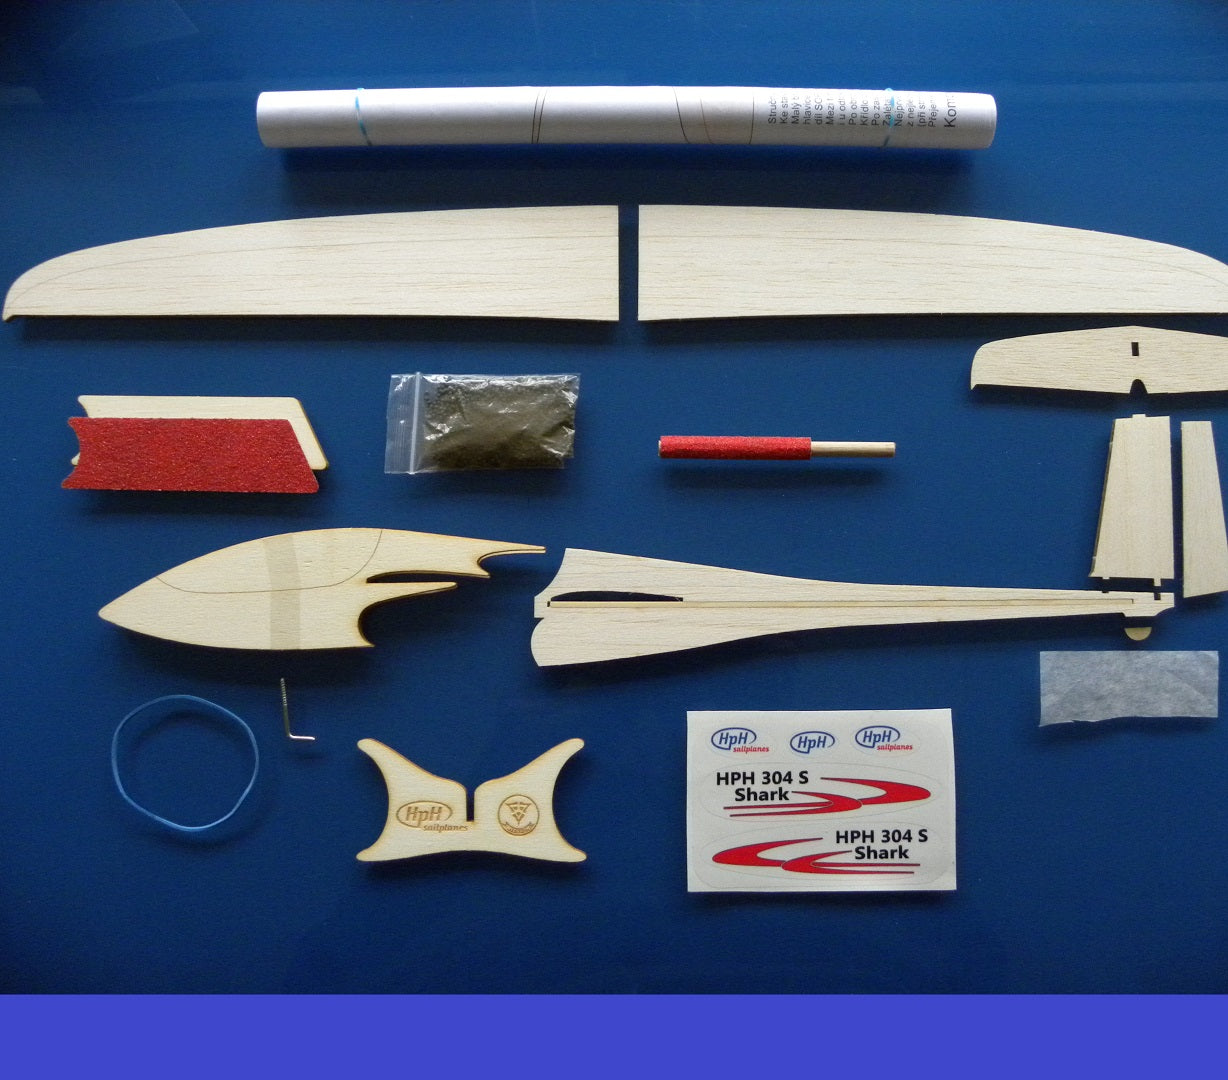 HPH TWIN SHARK Model Sailplane Kit